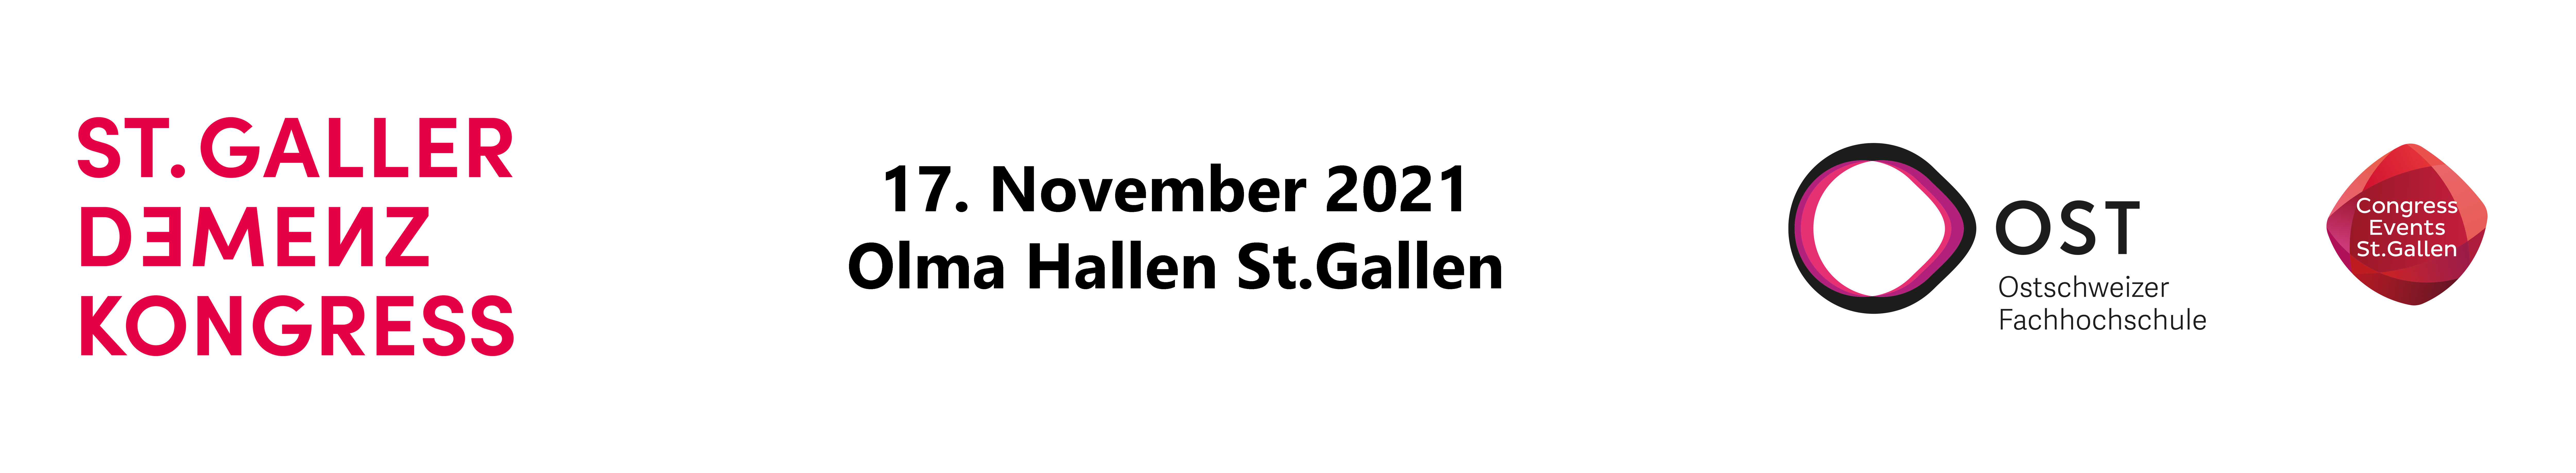 St Gallen Dementia Congress & Expo